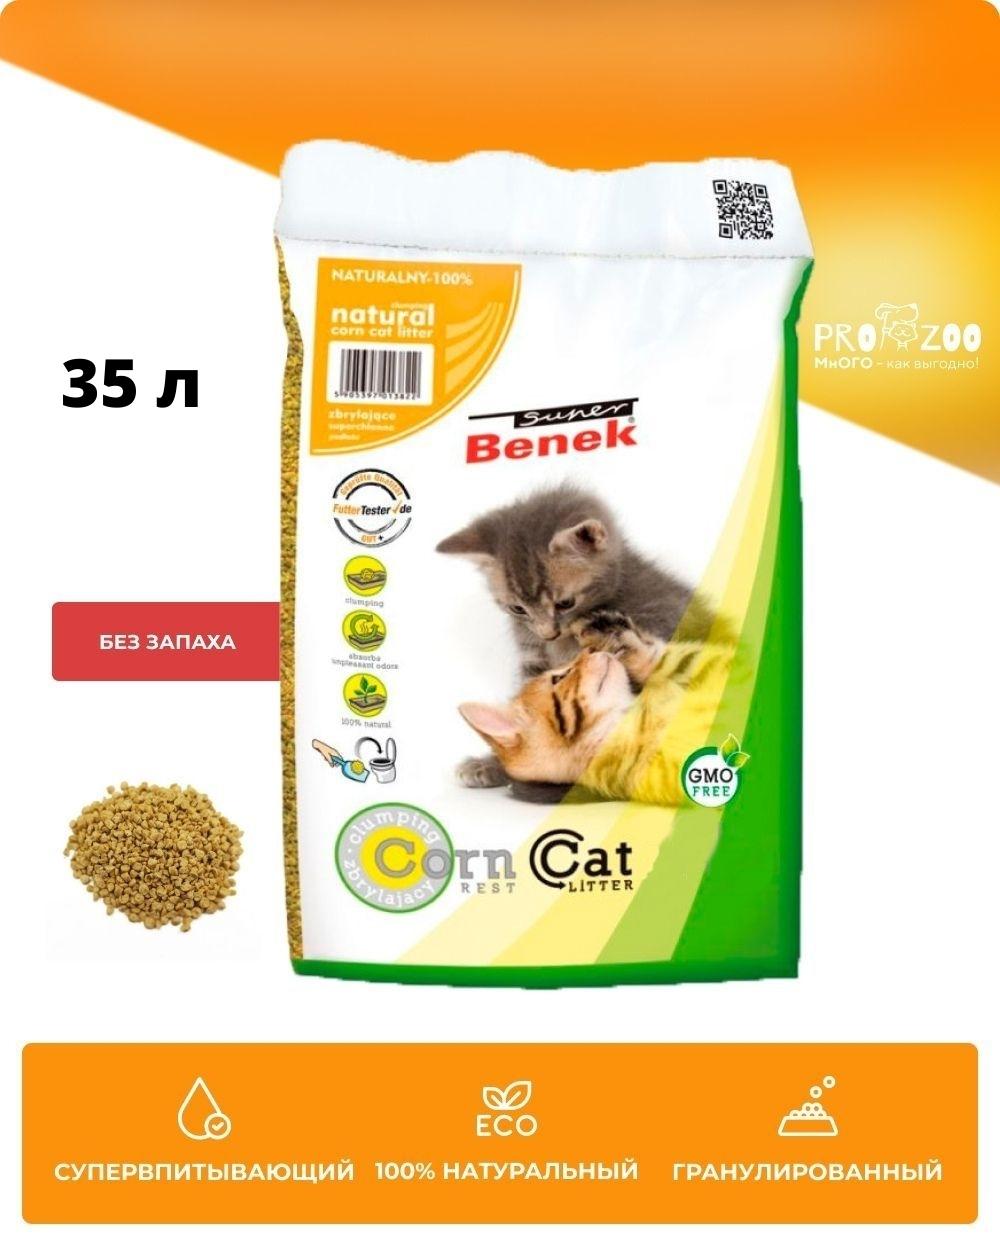 предпросмотр Наполнитель Corn Cat для кошек, 22 кг 1